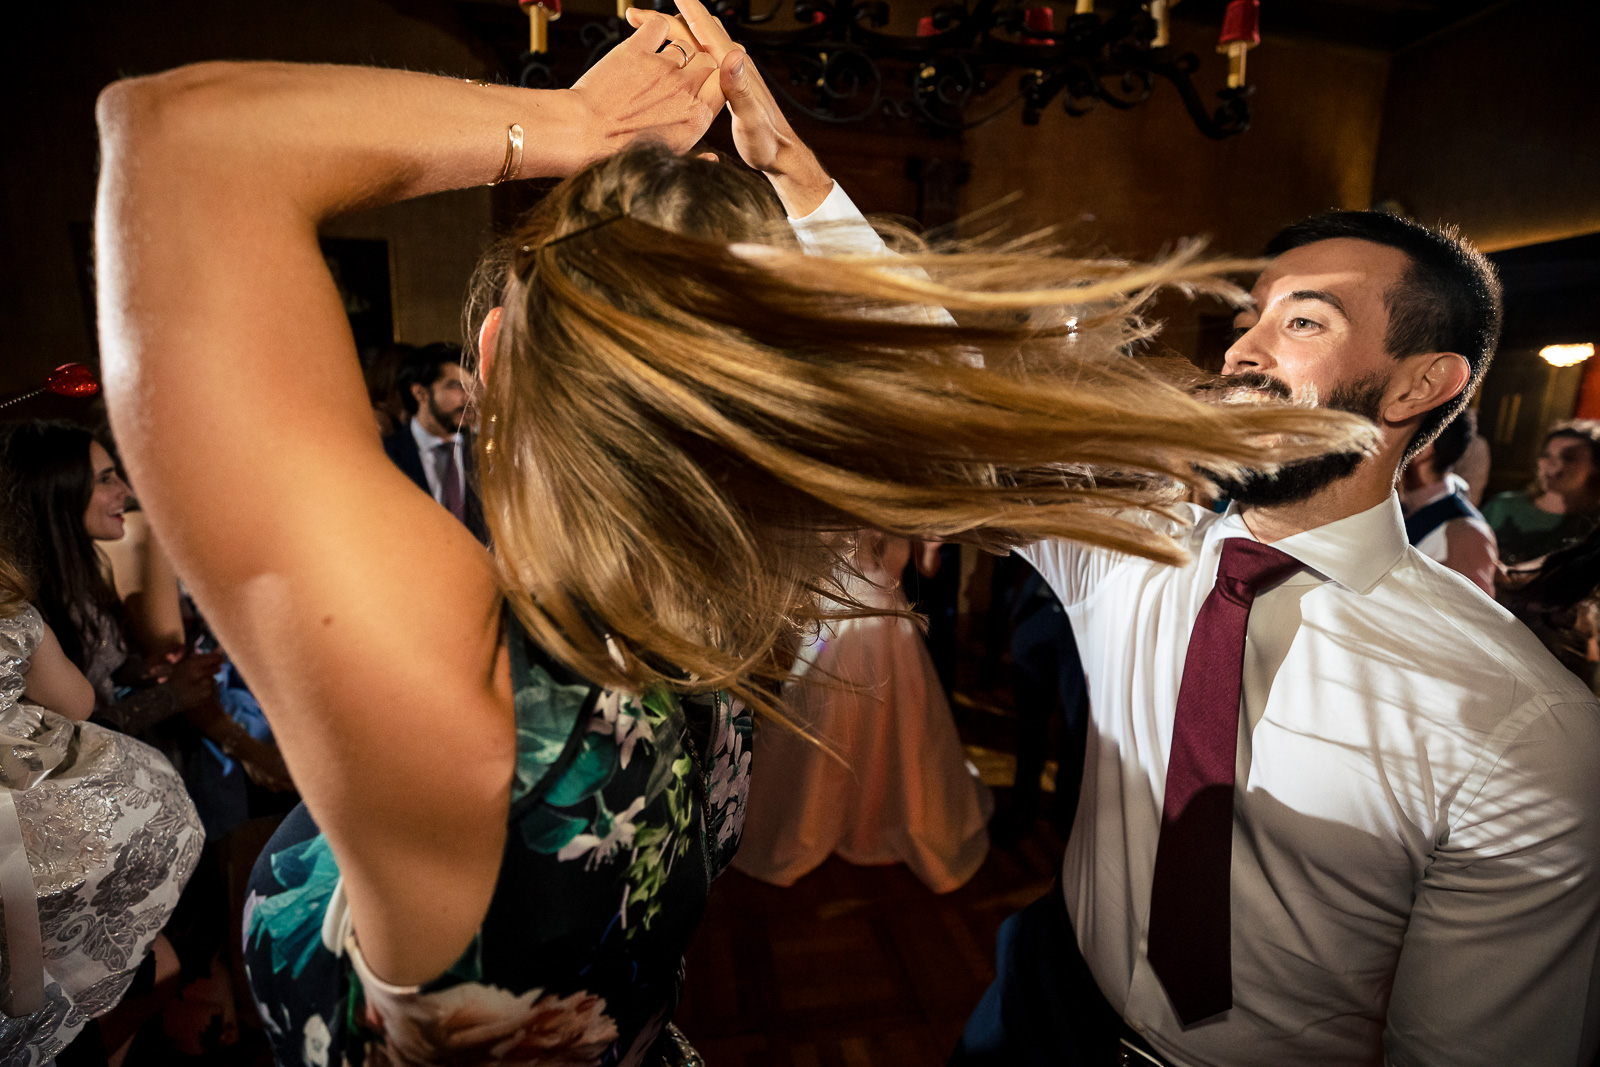 Dansen tijdens huwelijksfeest door trouwfotograaf Den Haag